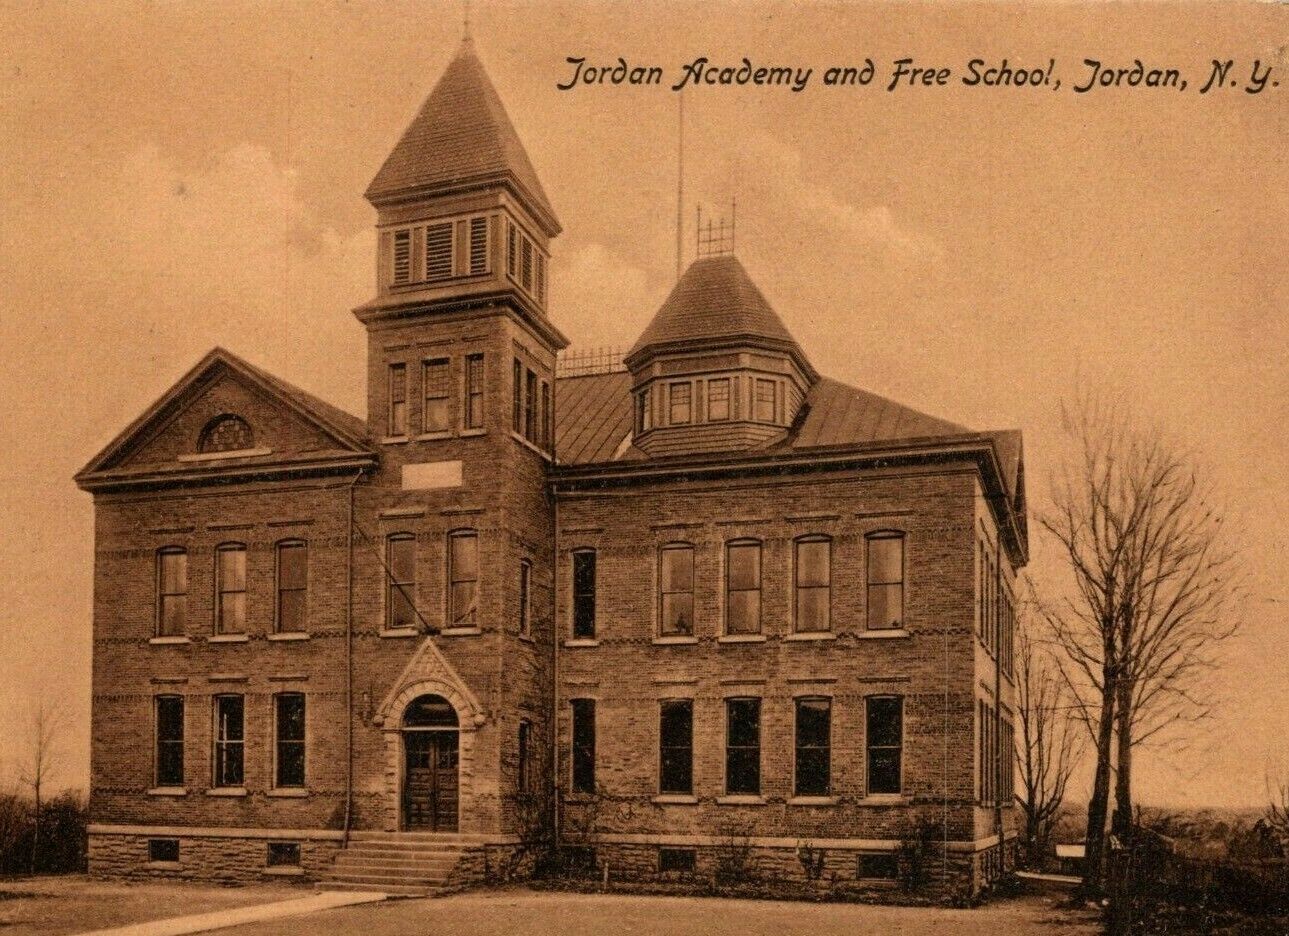 Jordan New York Elbridge NY Jordan Academy and Free School Old Vtg 1909 Postcard